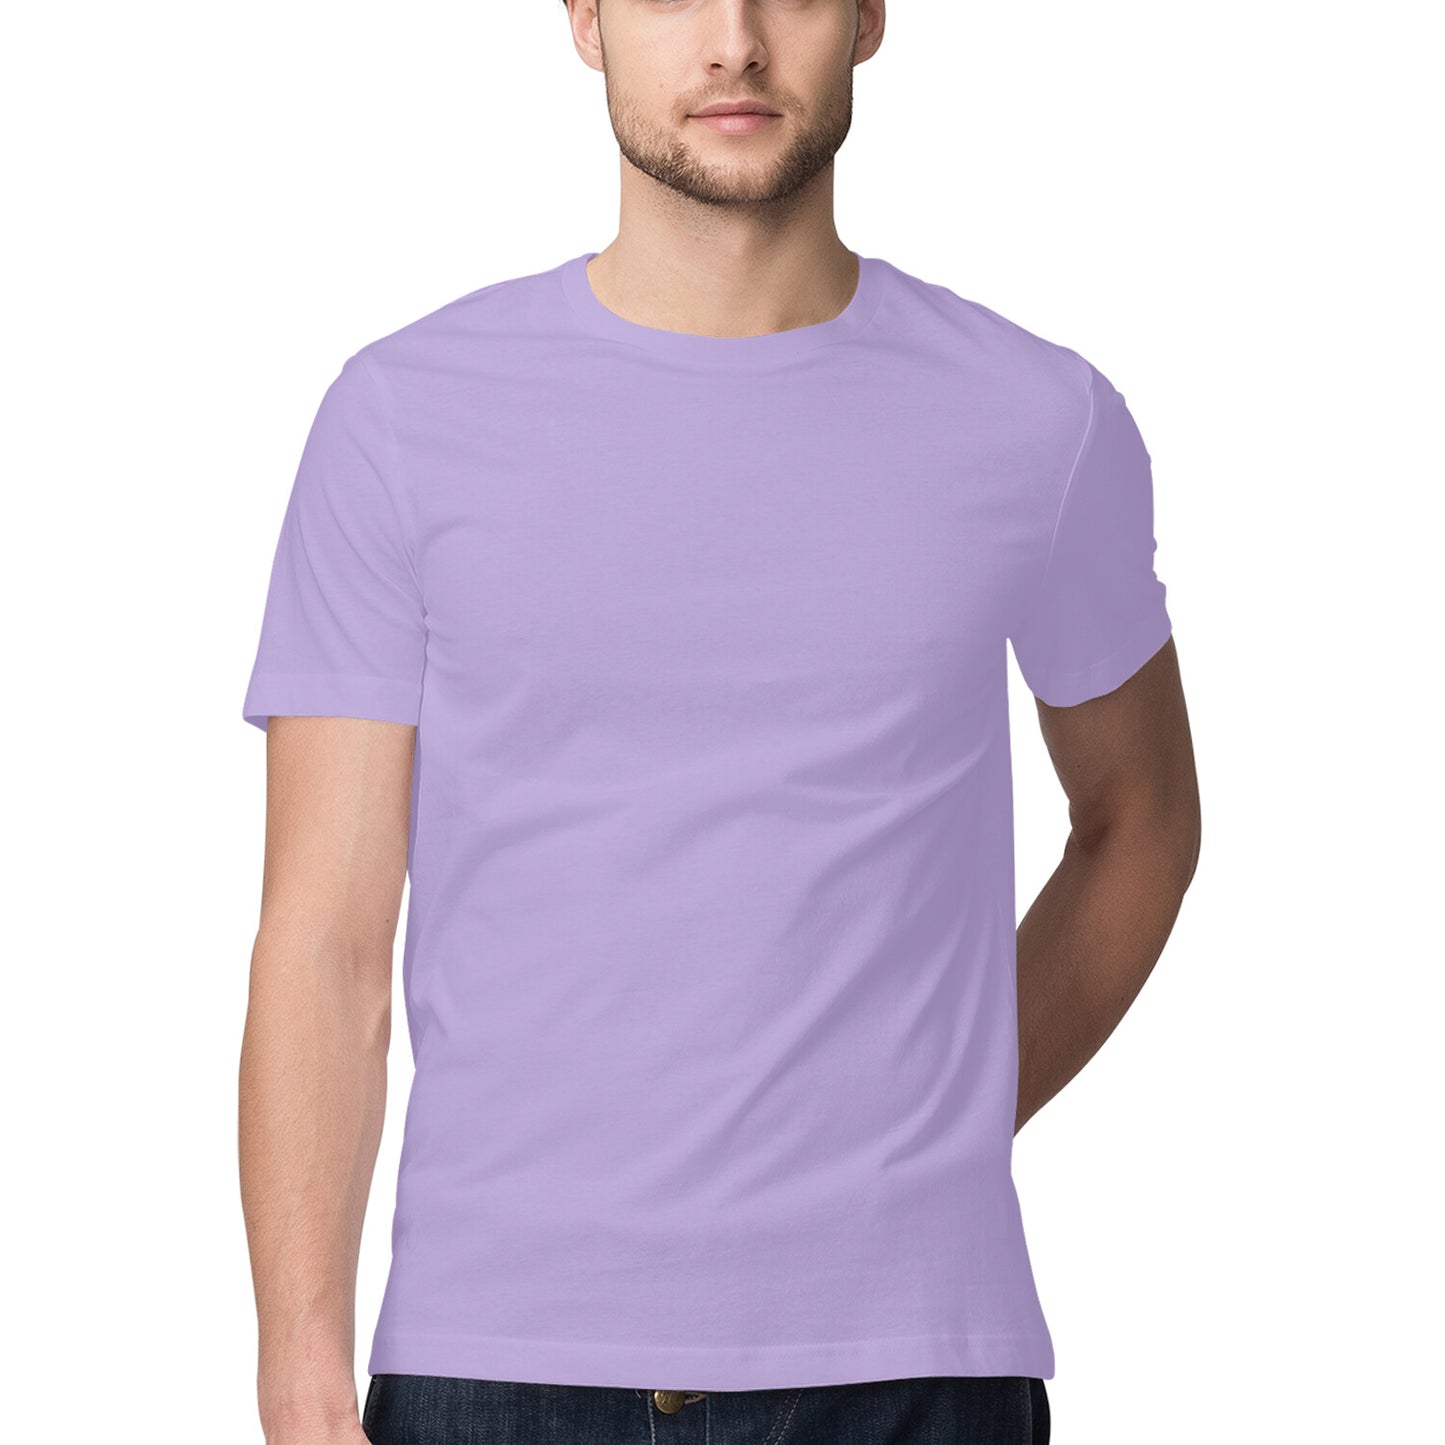 Iris Lavender - Half Sleeve Round Neck T-Shirt